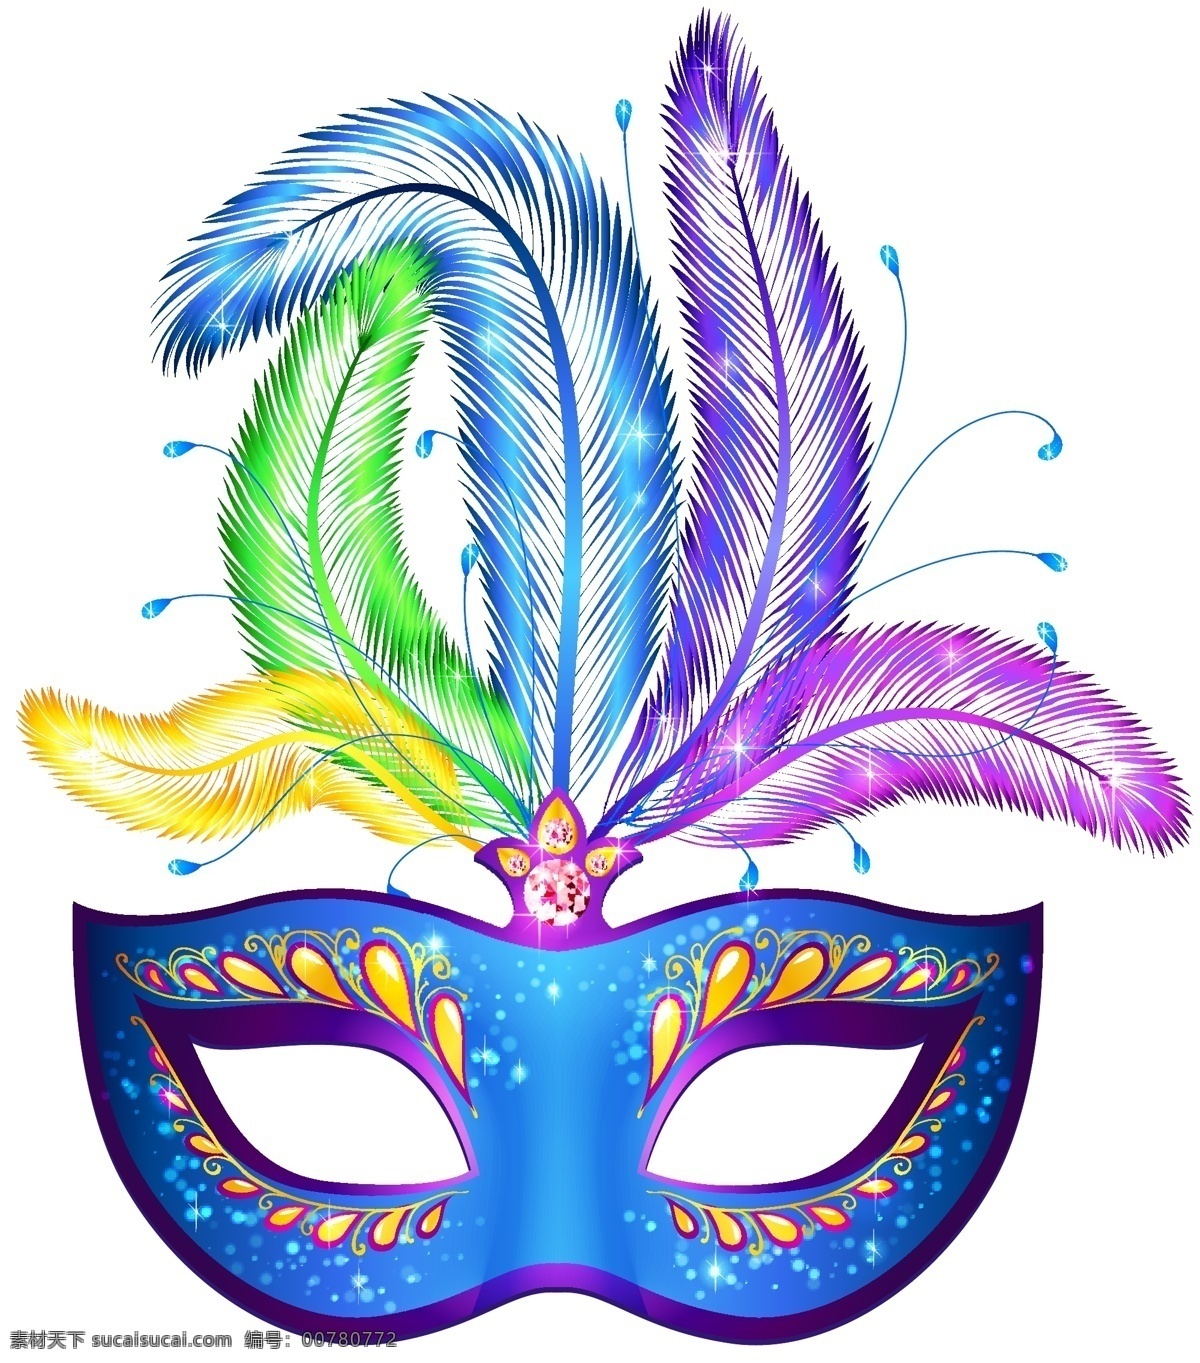 彩色羽毛面具 彩色羽毛 矢量面具 面具 装饰花边 羽毛 羽毛饰品 西班牙 马德里面具 羽毛风铃 卡通设计